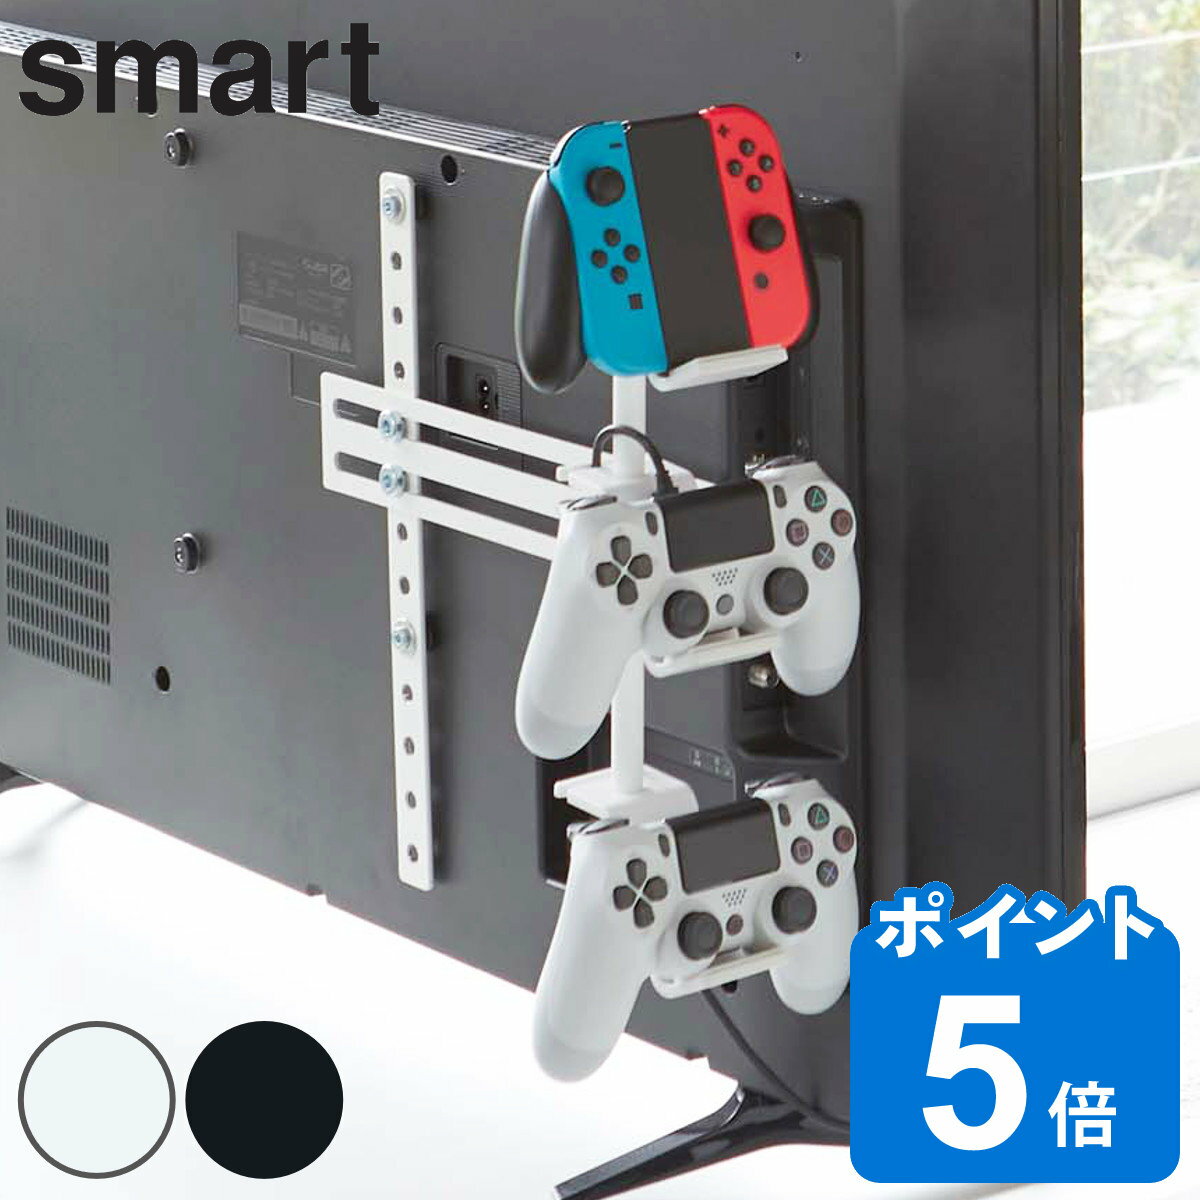 山崎実業 smart 収納ラック テレビ裏ゲームコントローラー収納ラック スマート （ 3段 ゲーム コントローラー ヘッド…